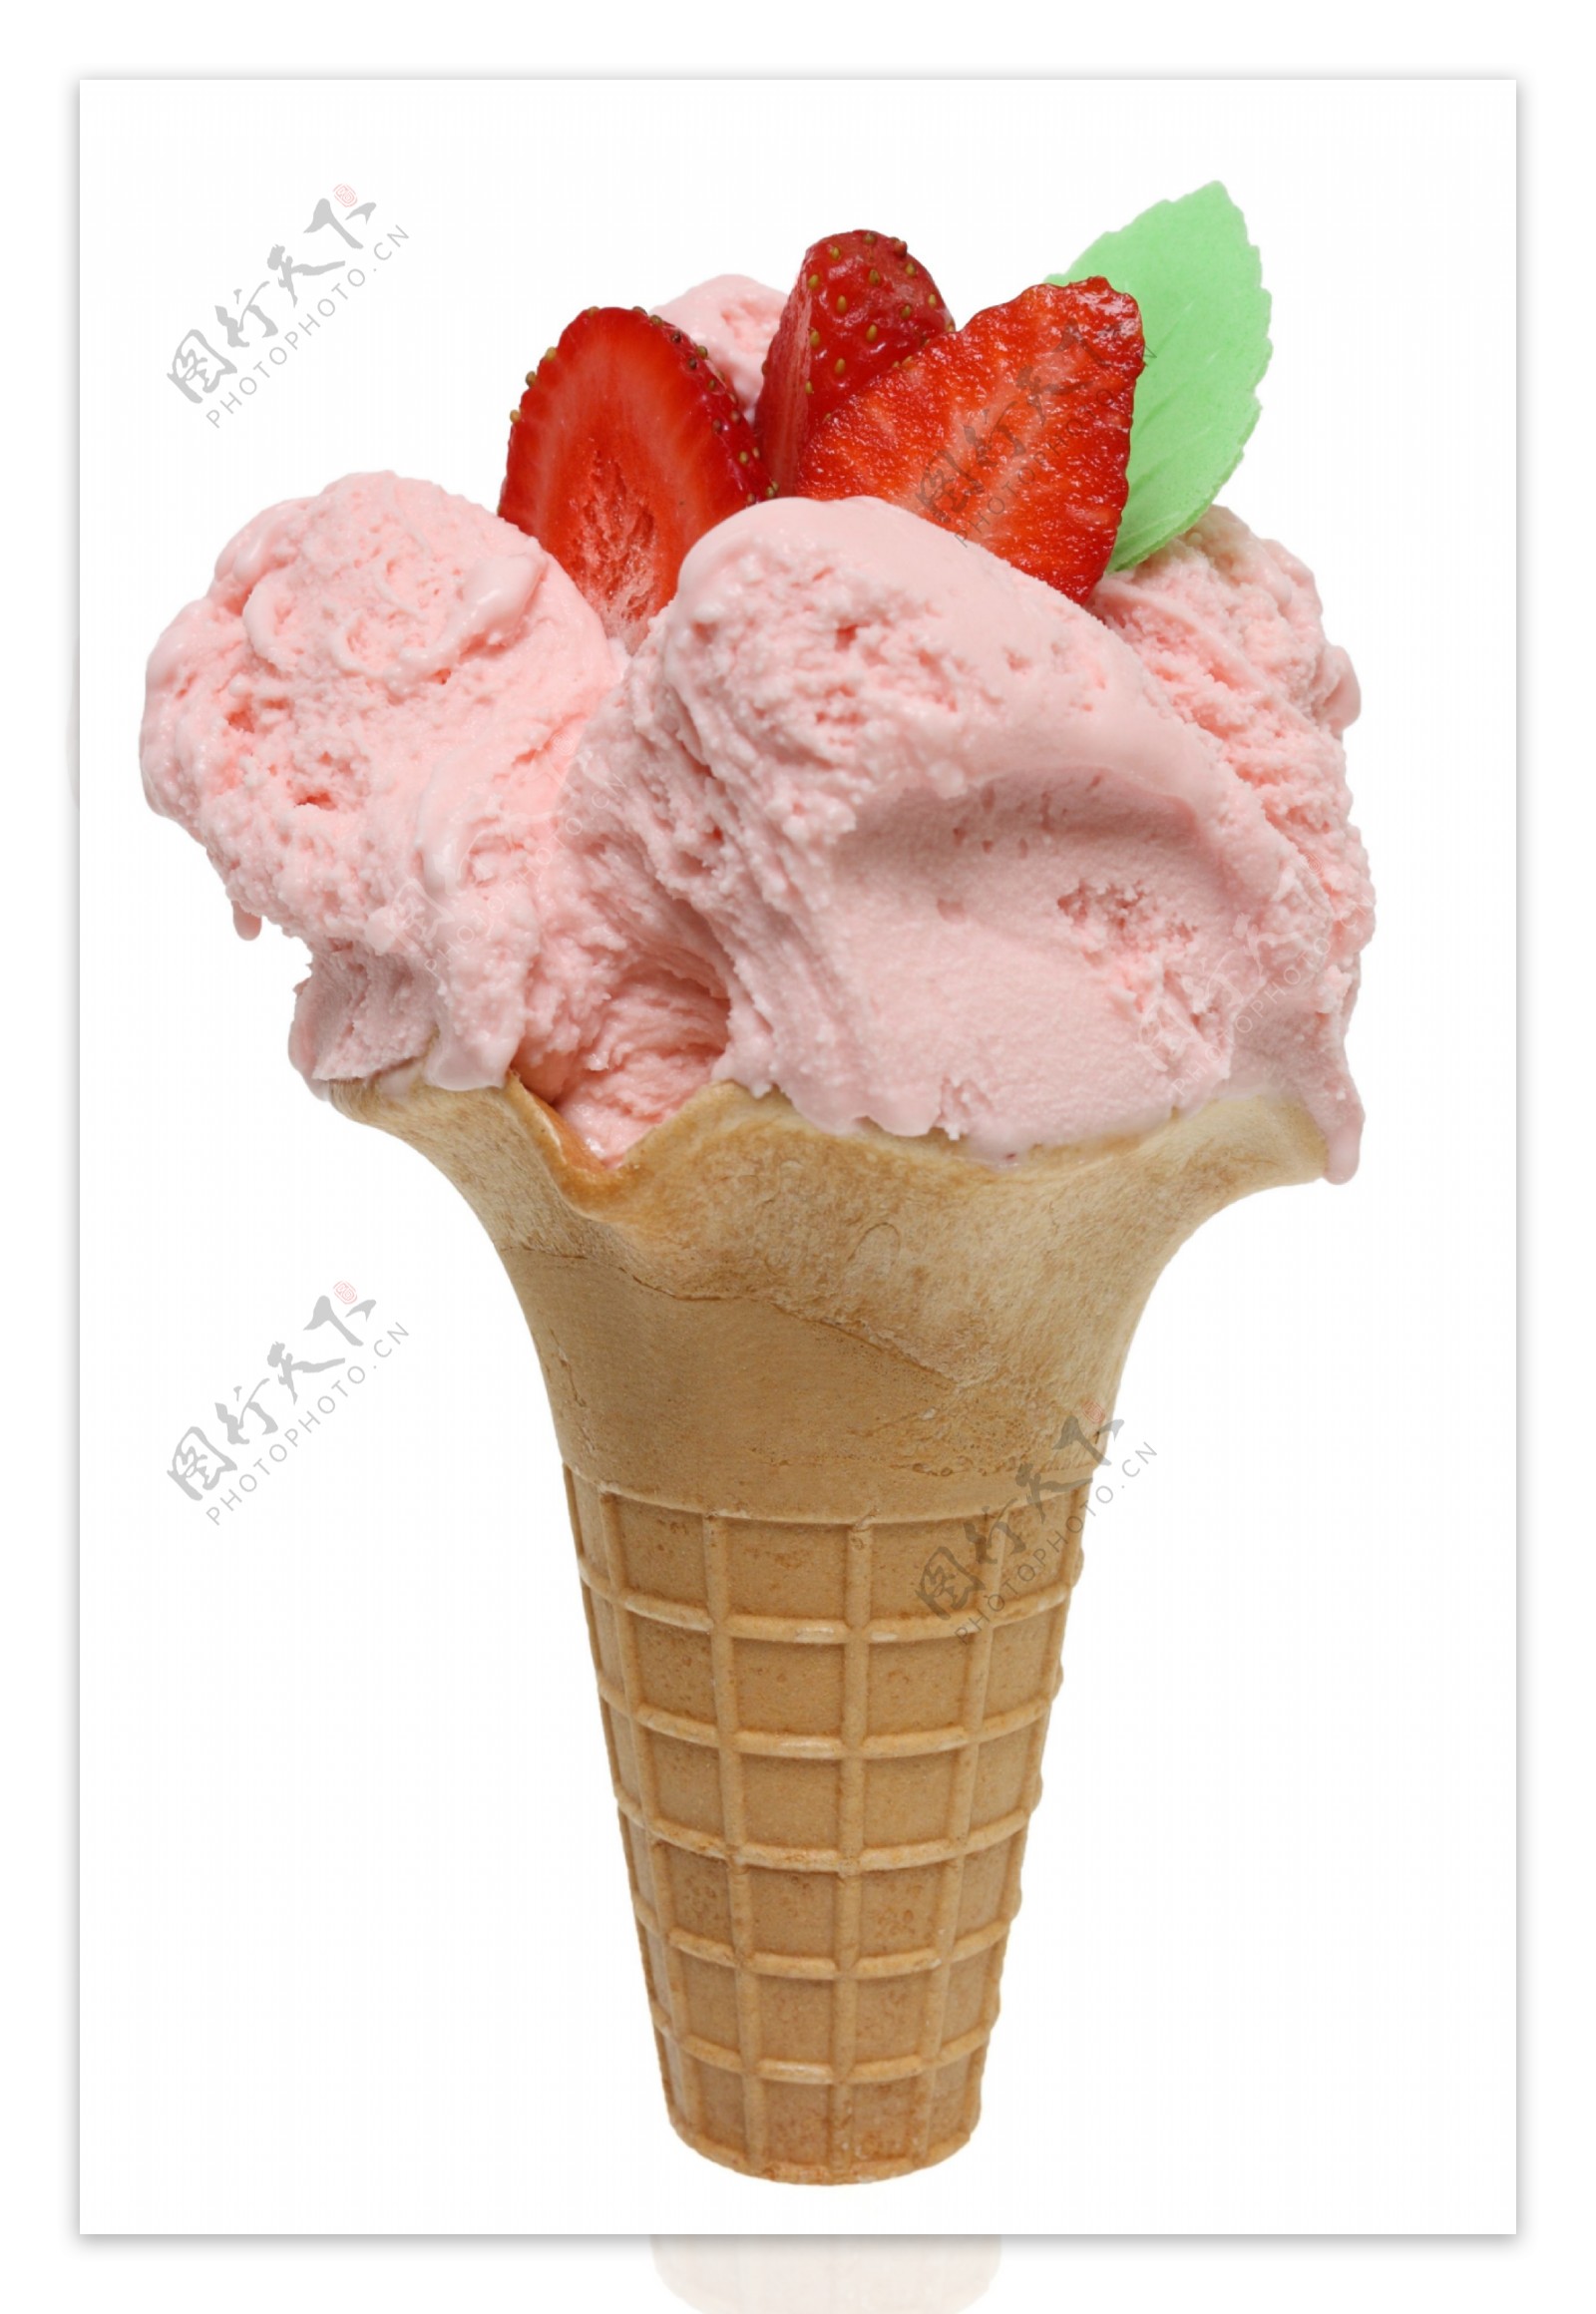 草莓冰淇凌圣代冰淇淋 库存照片. 图片 包括有 杯子, 新鲜, 薄酥饼, 圣代冰淇淋, 奶油, 冻结, 树莓 - 123575890